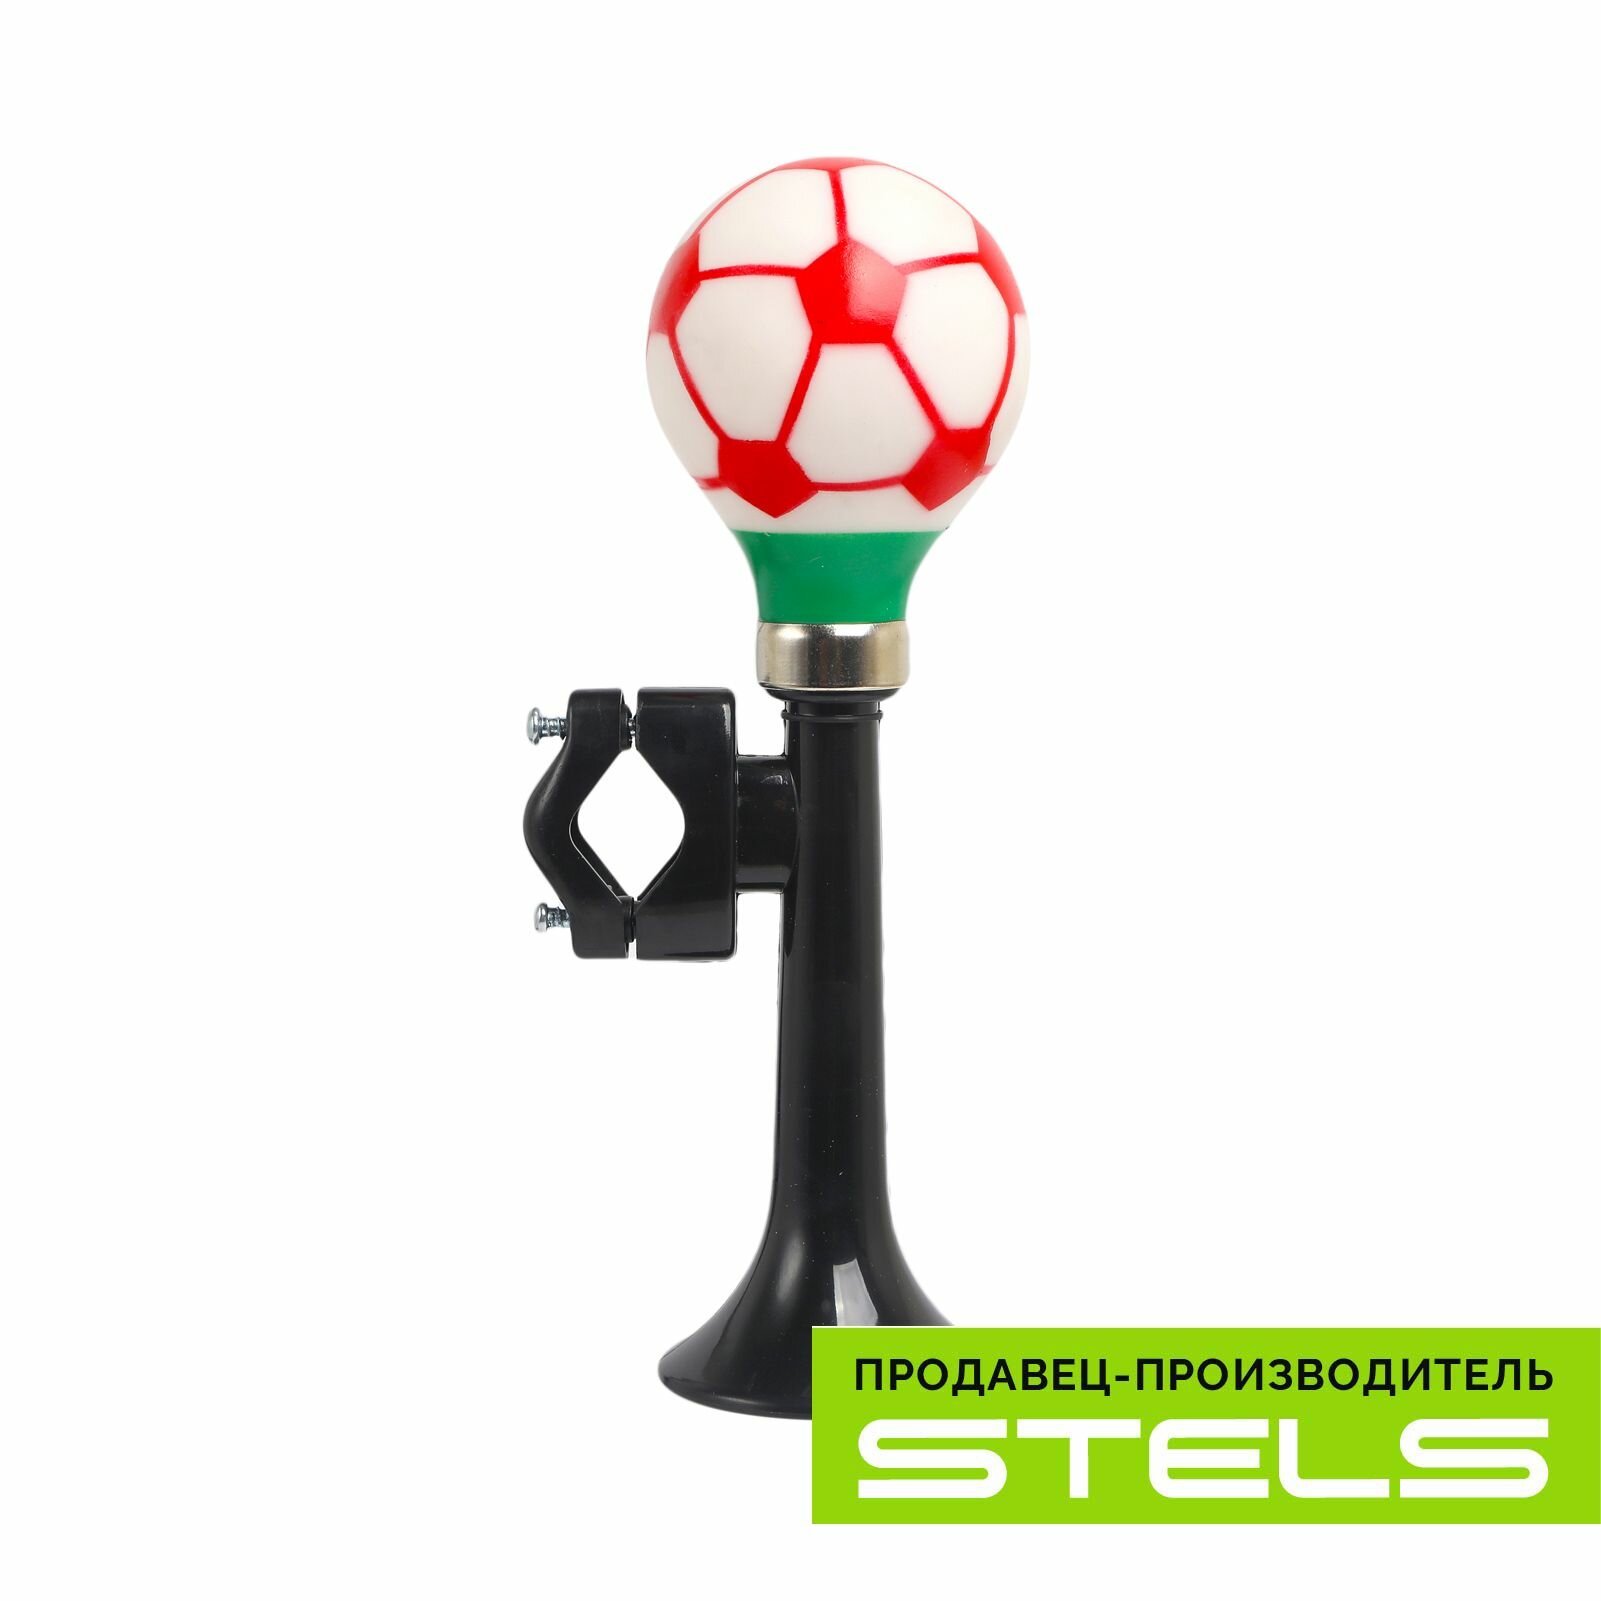 Клаксон STELS 73L-01 "Футбольный мяч" пластик/ПВХ красно-чёрный